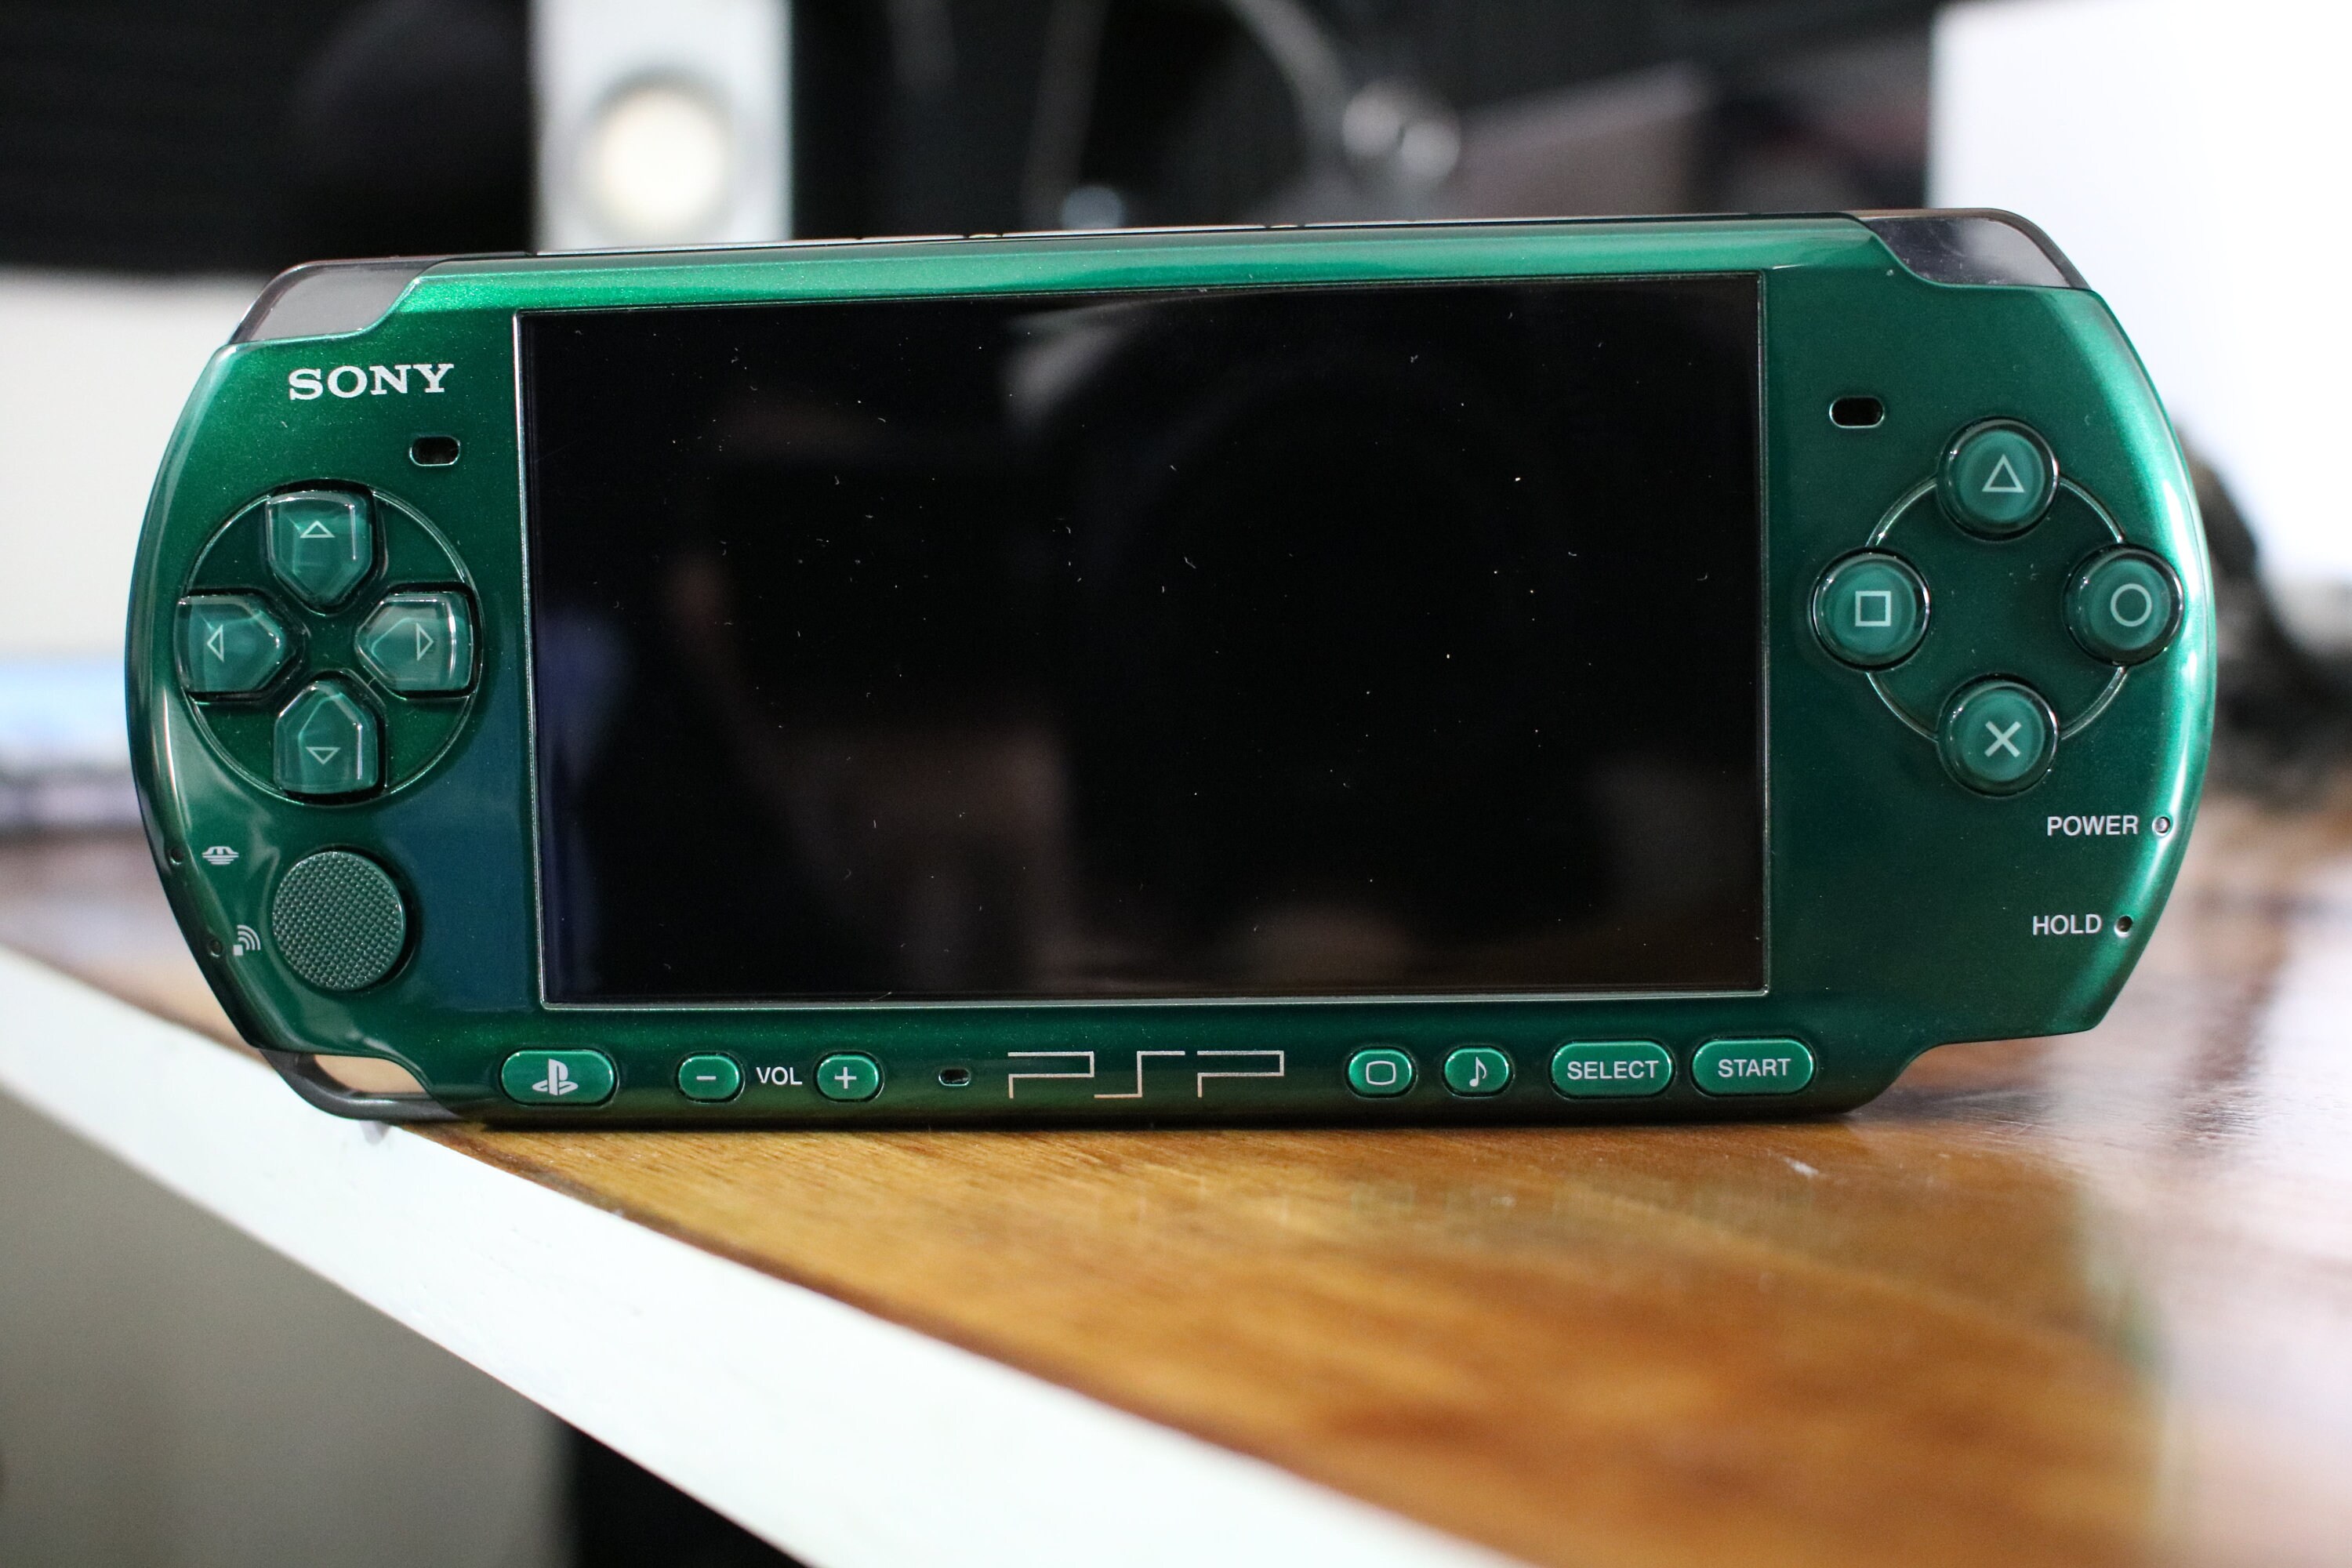 Modded Sony 3000. Emerald Green. 6.61 CFW Mod. 128gb. - Etsy